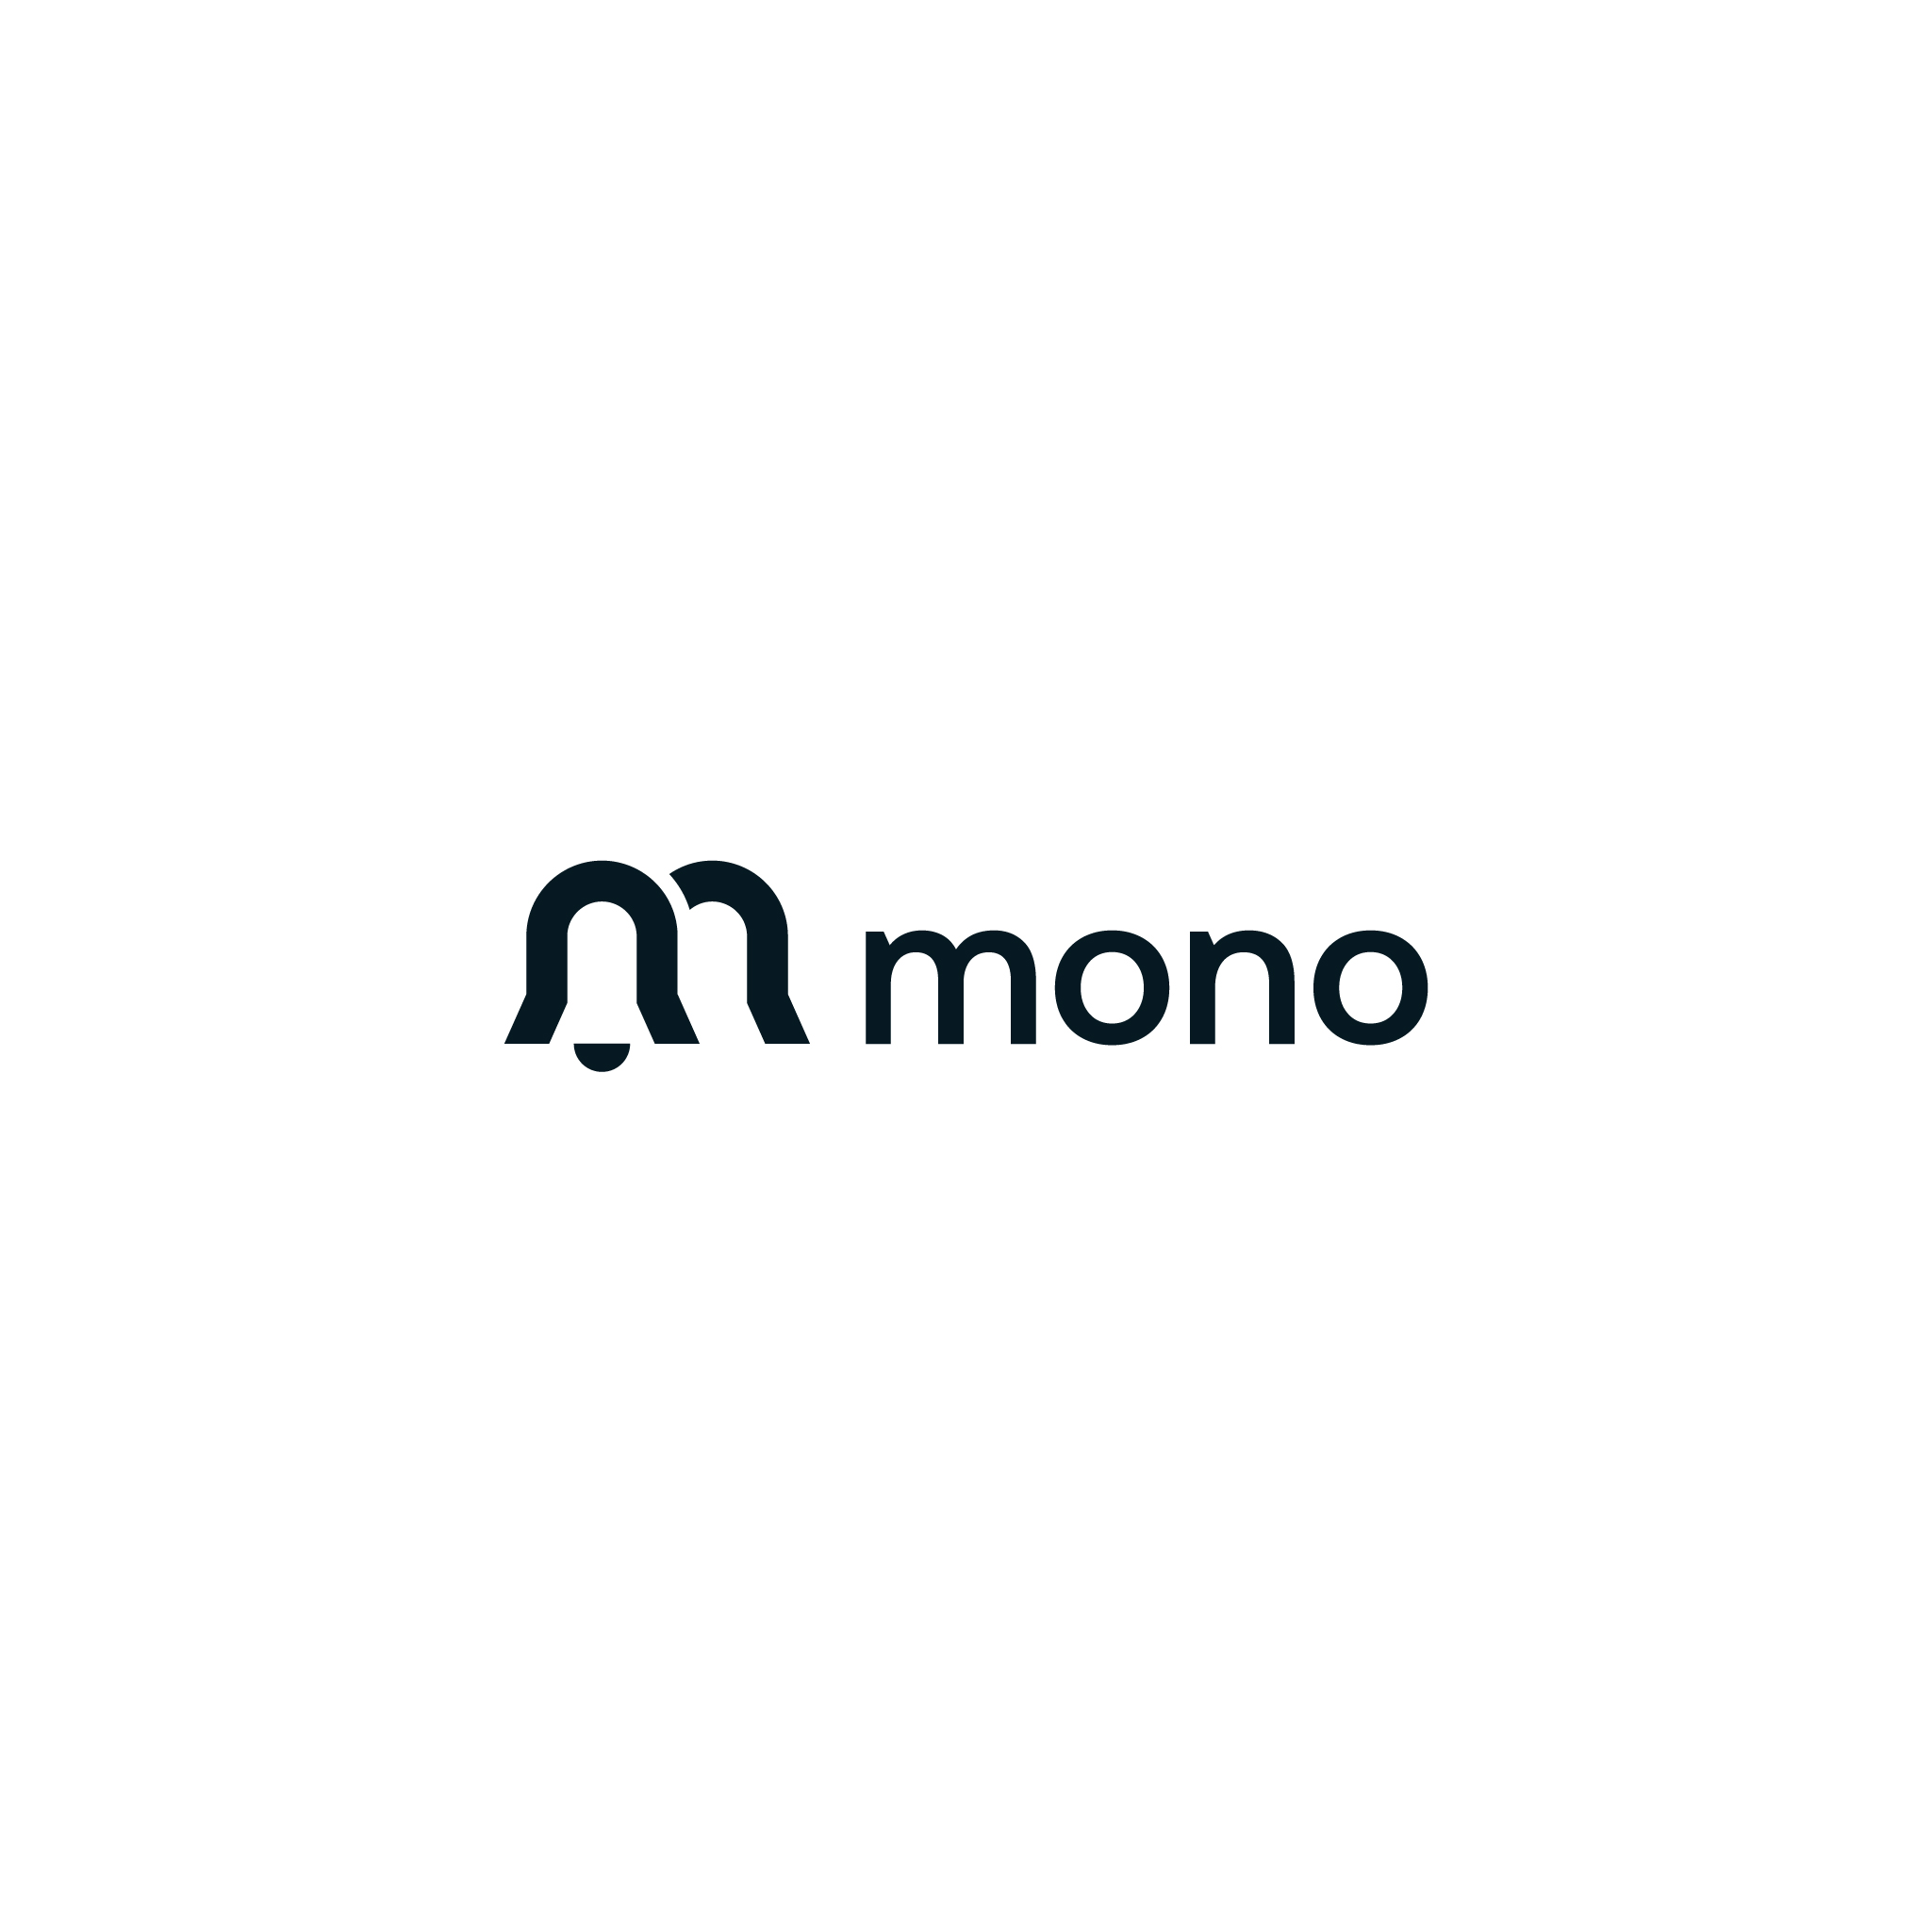 mono_logo_felis-02